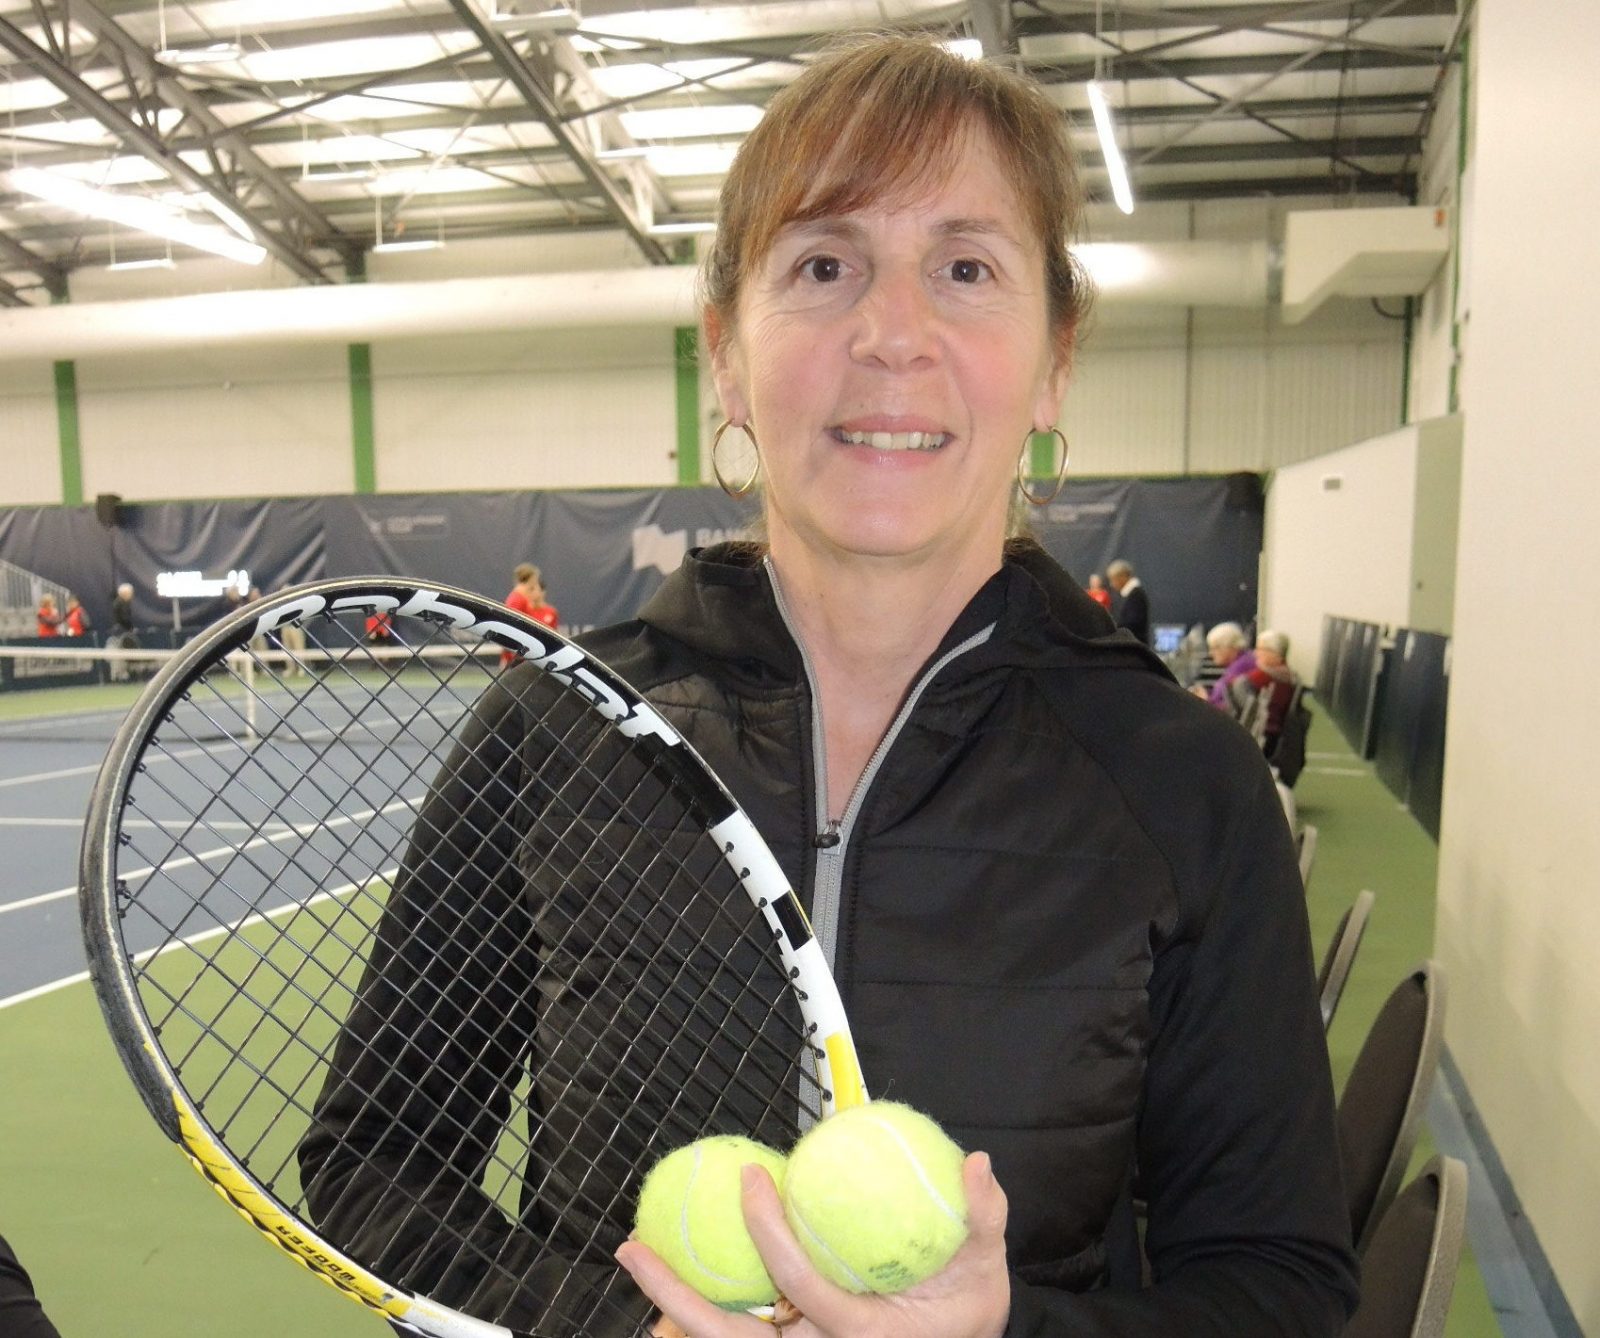 Anne Veillette, une carrière dédiée au tennis